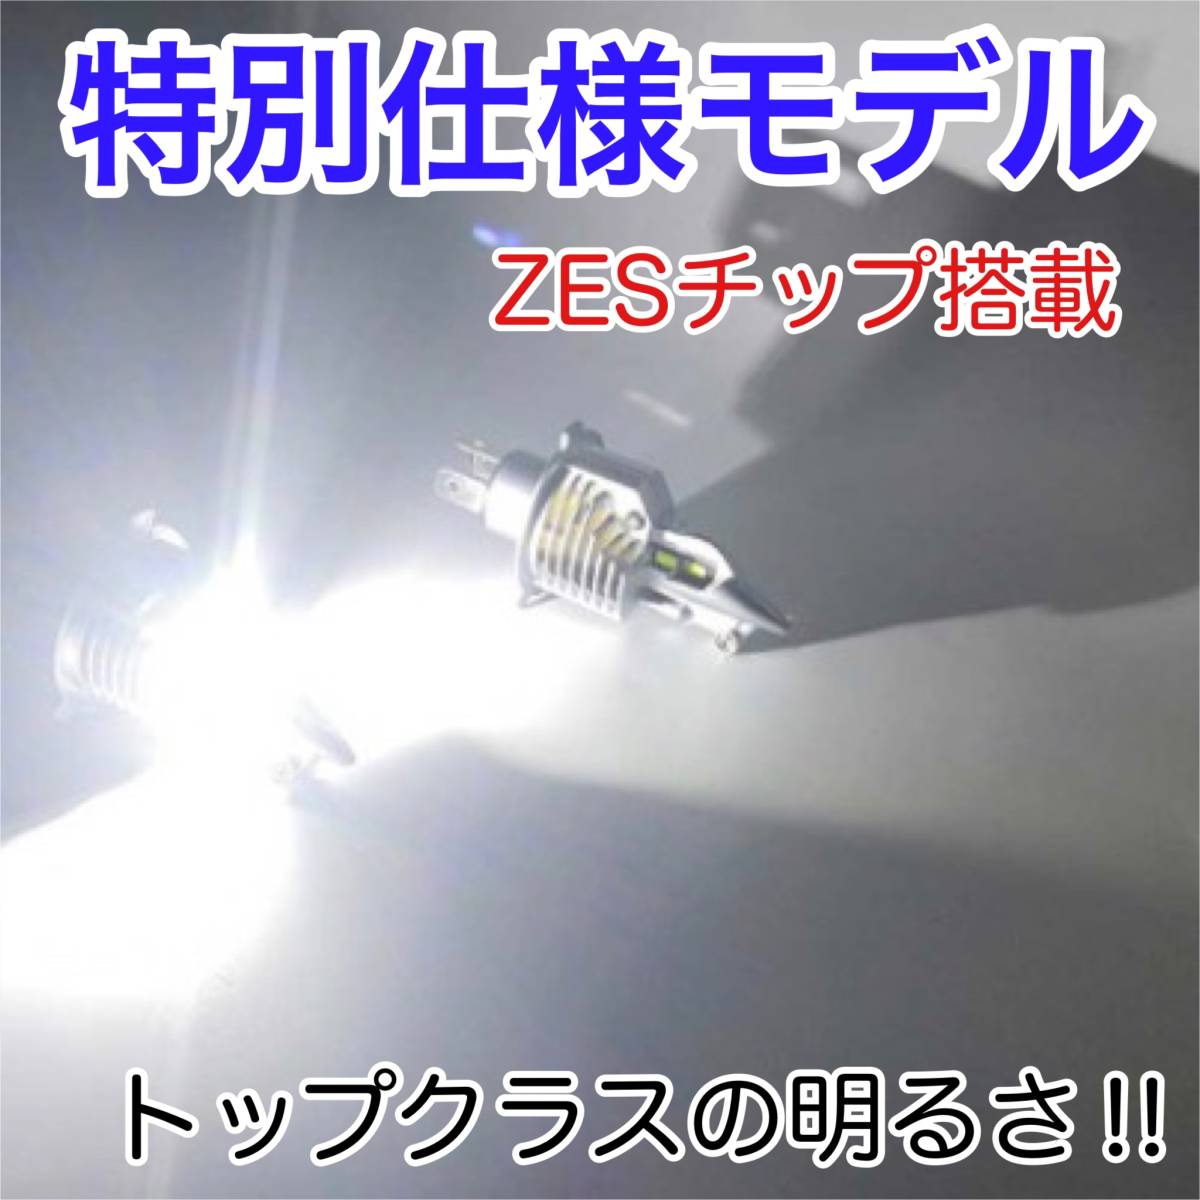 SUZUKI スズキ サベージ NK41B LEDヘッドライト H4 Hi/Lo バルブ バイク用 1灯 S25 テールランプ2個 ホワイト 交換用